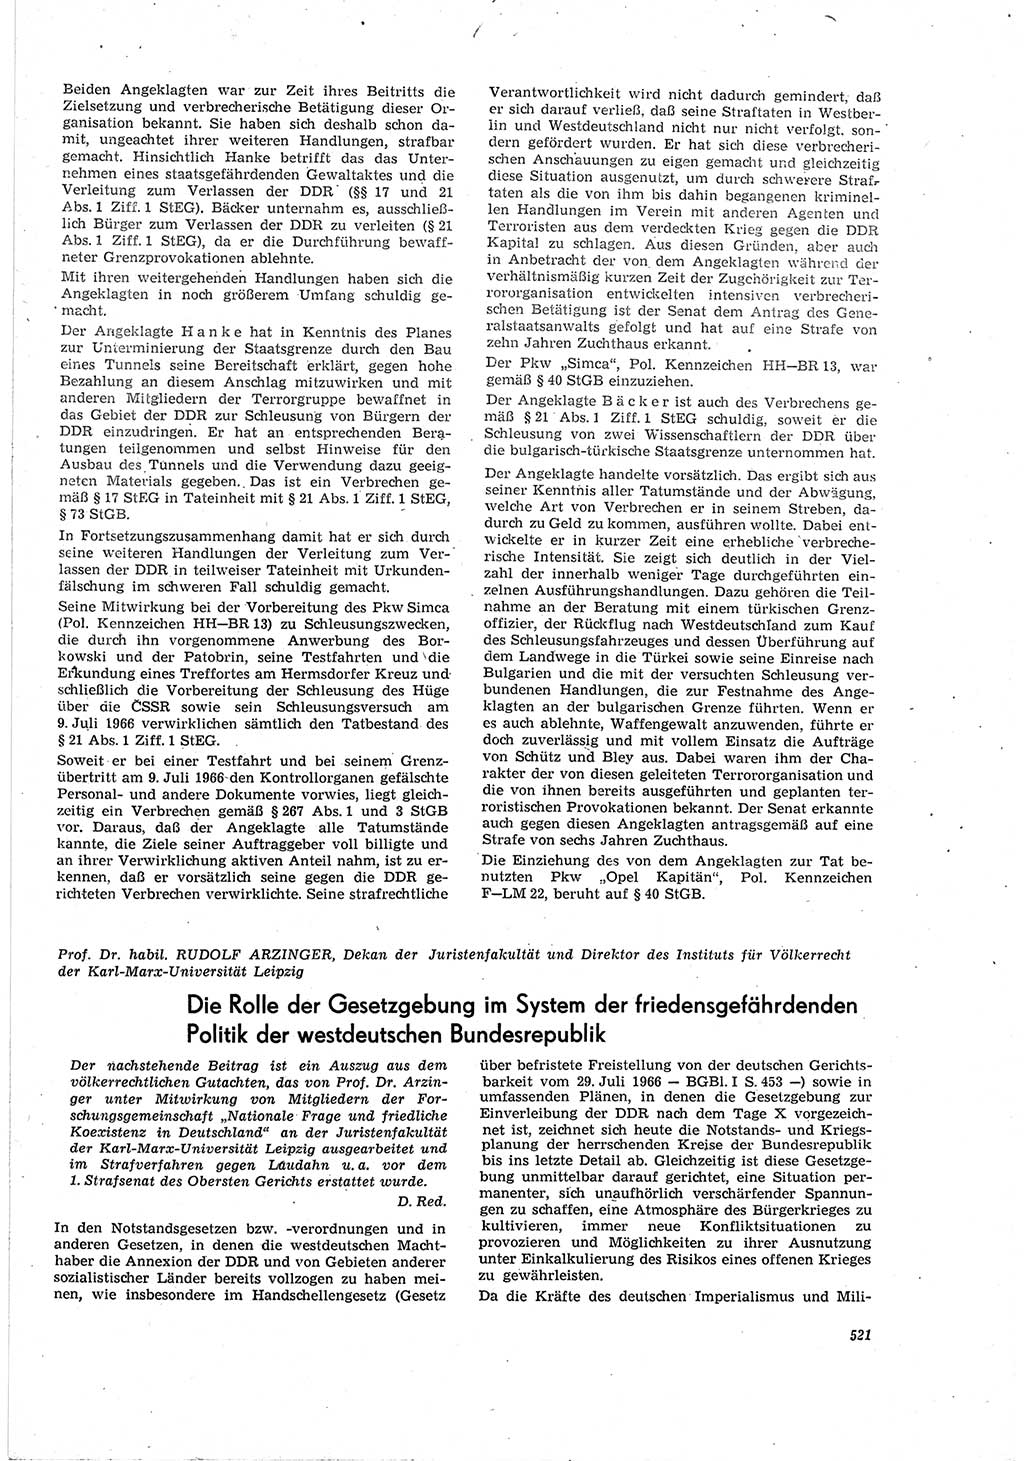 Neue Justiz (NJ), Zeitschrift für Recht und Rechtswissenschaft [Deutsche Demokratische Republik (DDR)], 20. Jahrgang 1966, Seite 521 (NJ DDR 1966, S. 521)